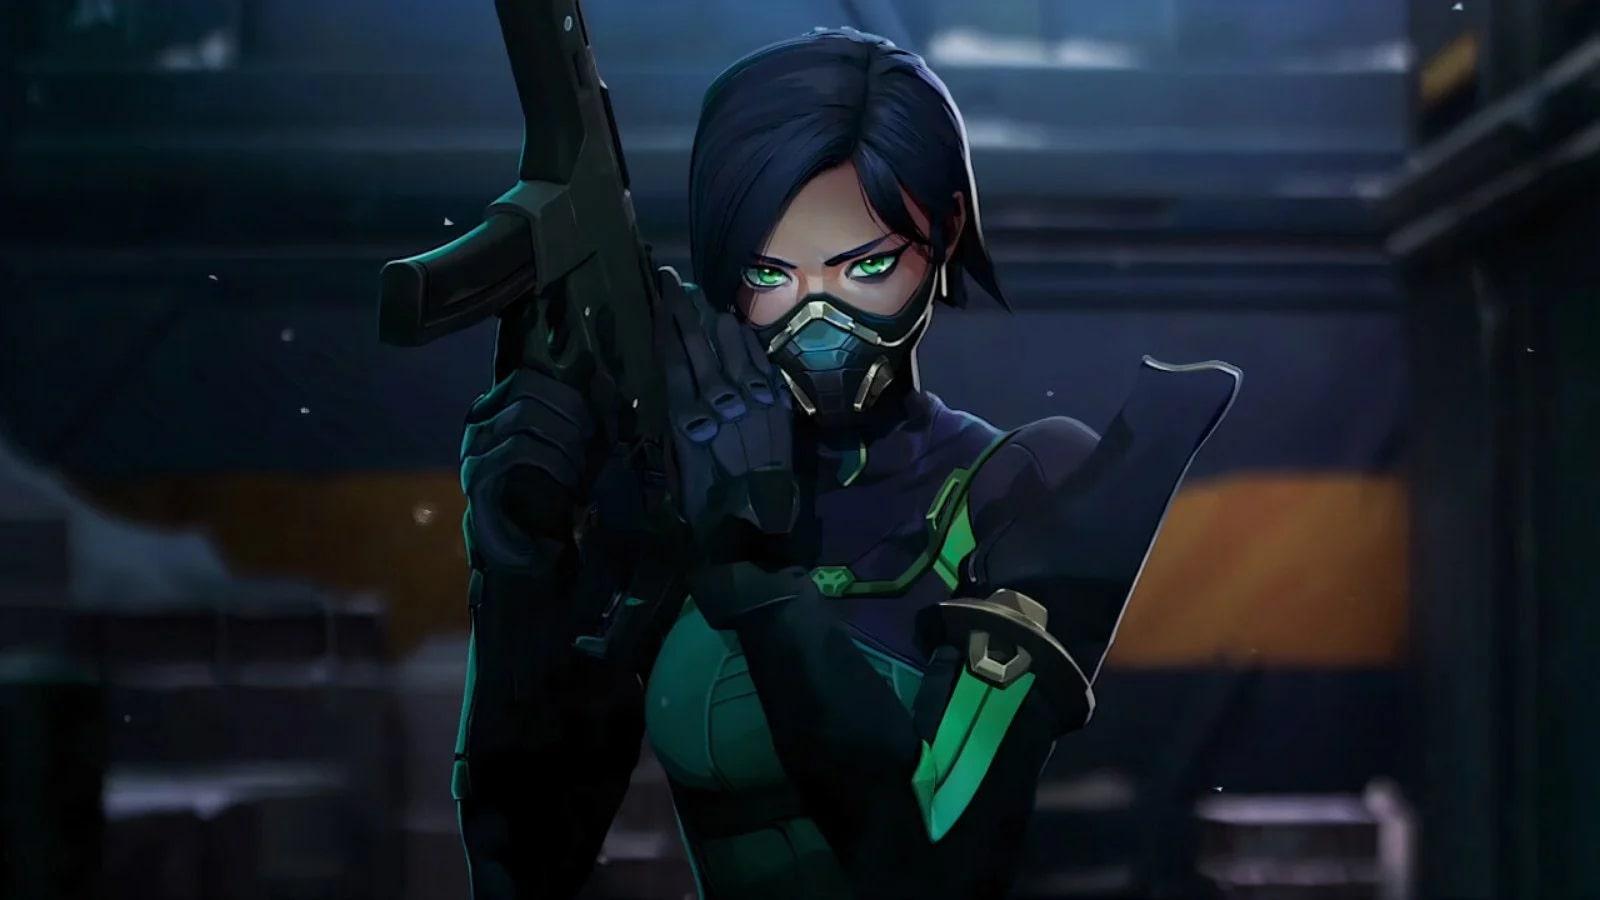 an image of Viper holding a gun